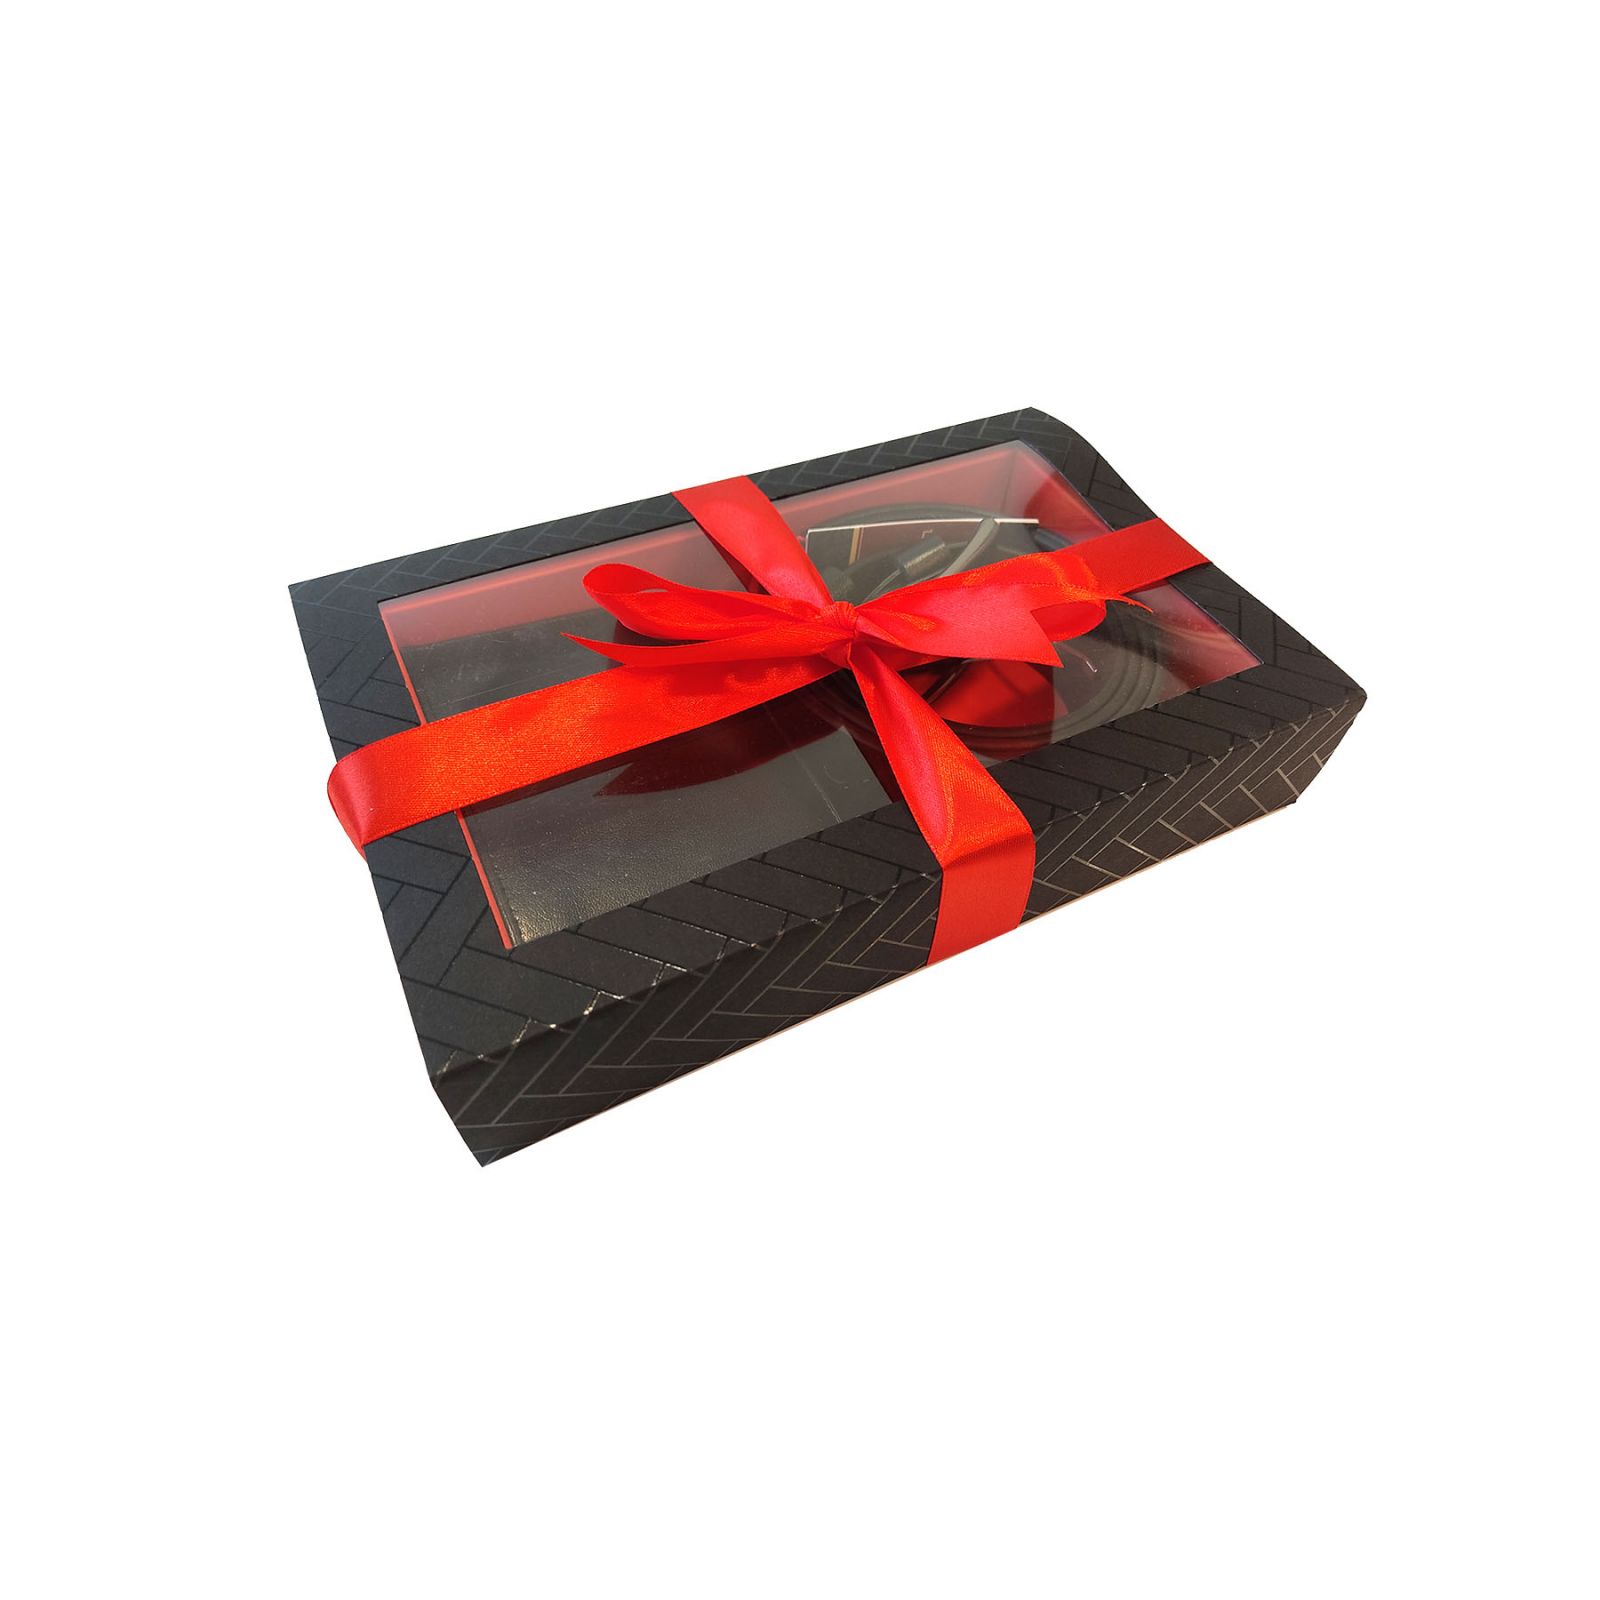 Juodas Vyriskos pinigines ir dirzo rinkinys dovana vyrui kaledoms gimtadienio Pierre Cardin originlas dezuteje supakuotas 